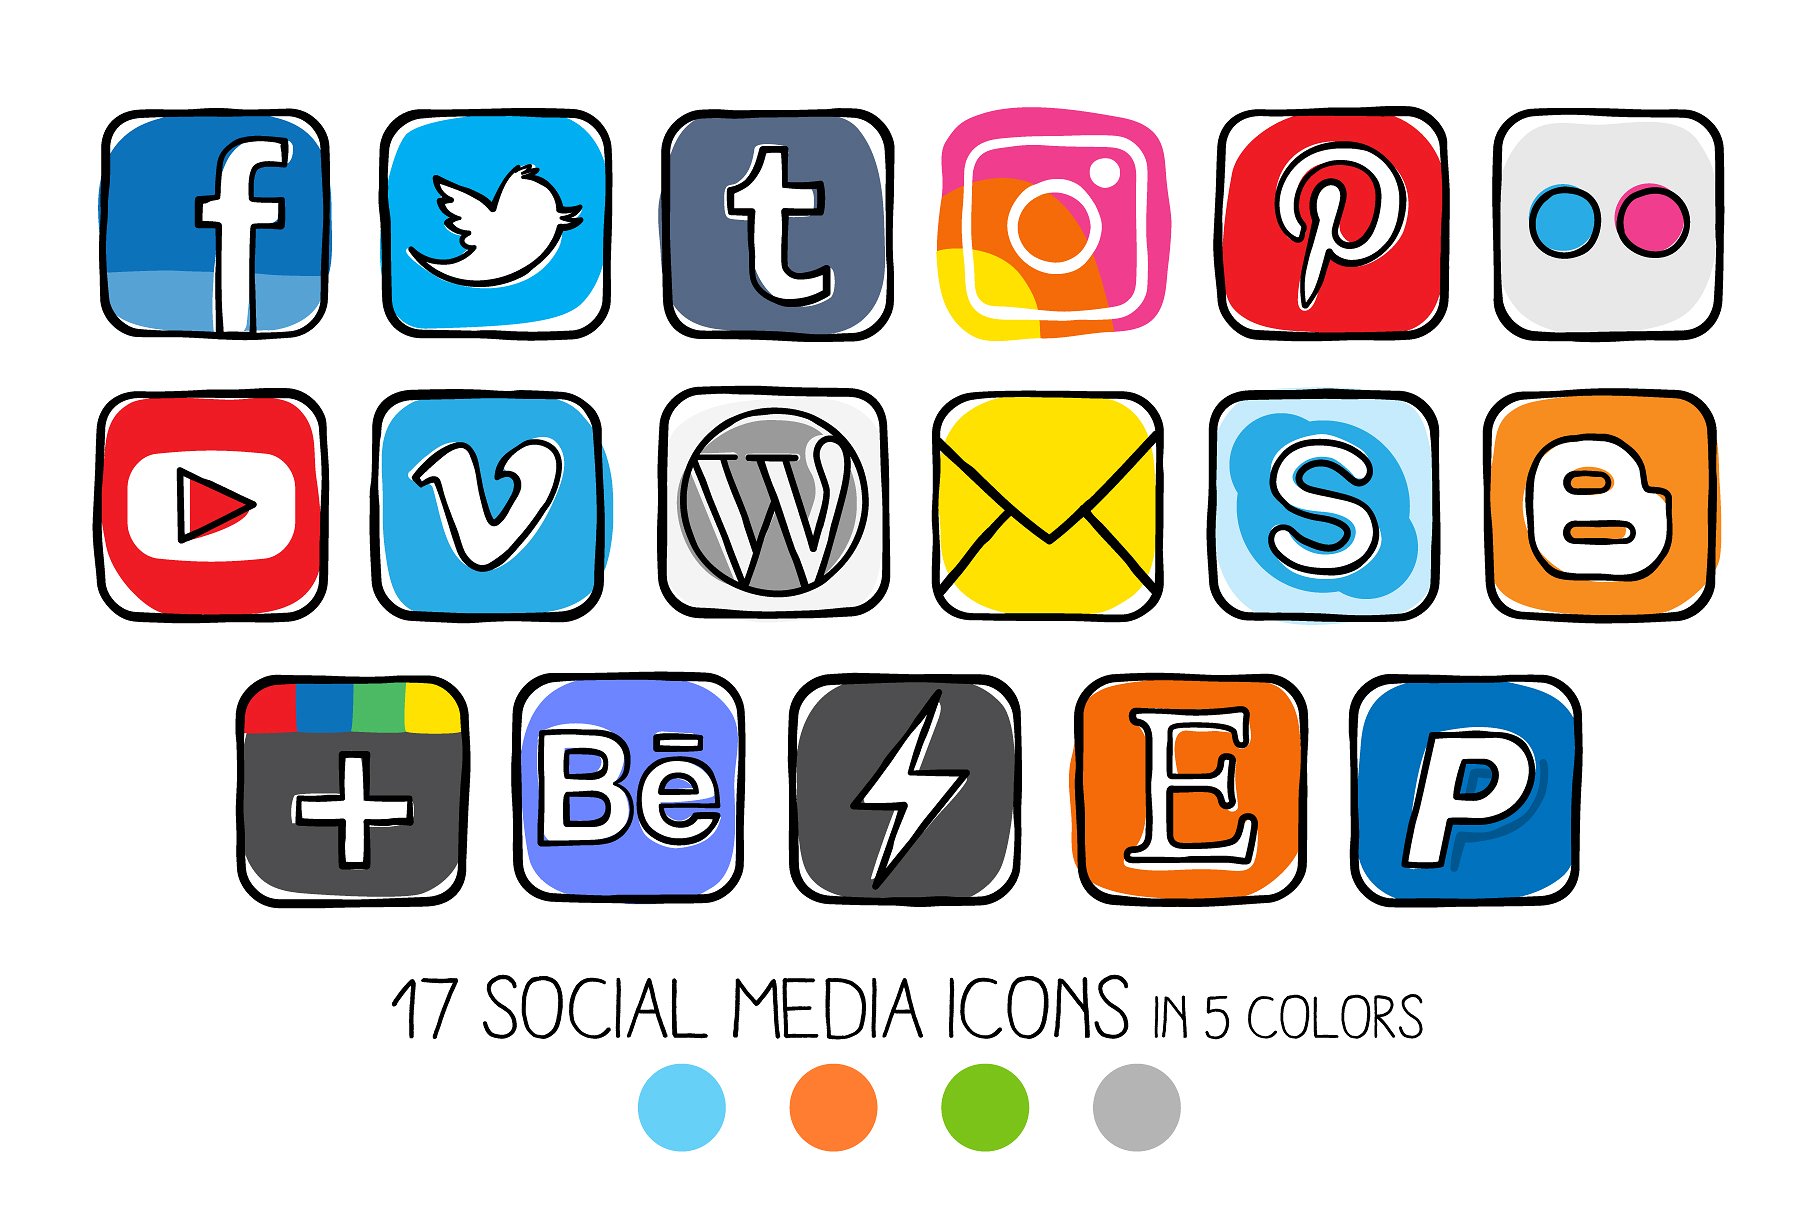 扭曲特效社交媒体图标 Guache effect social media icons插图